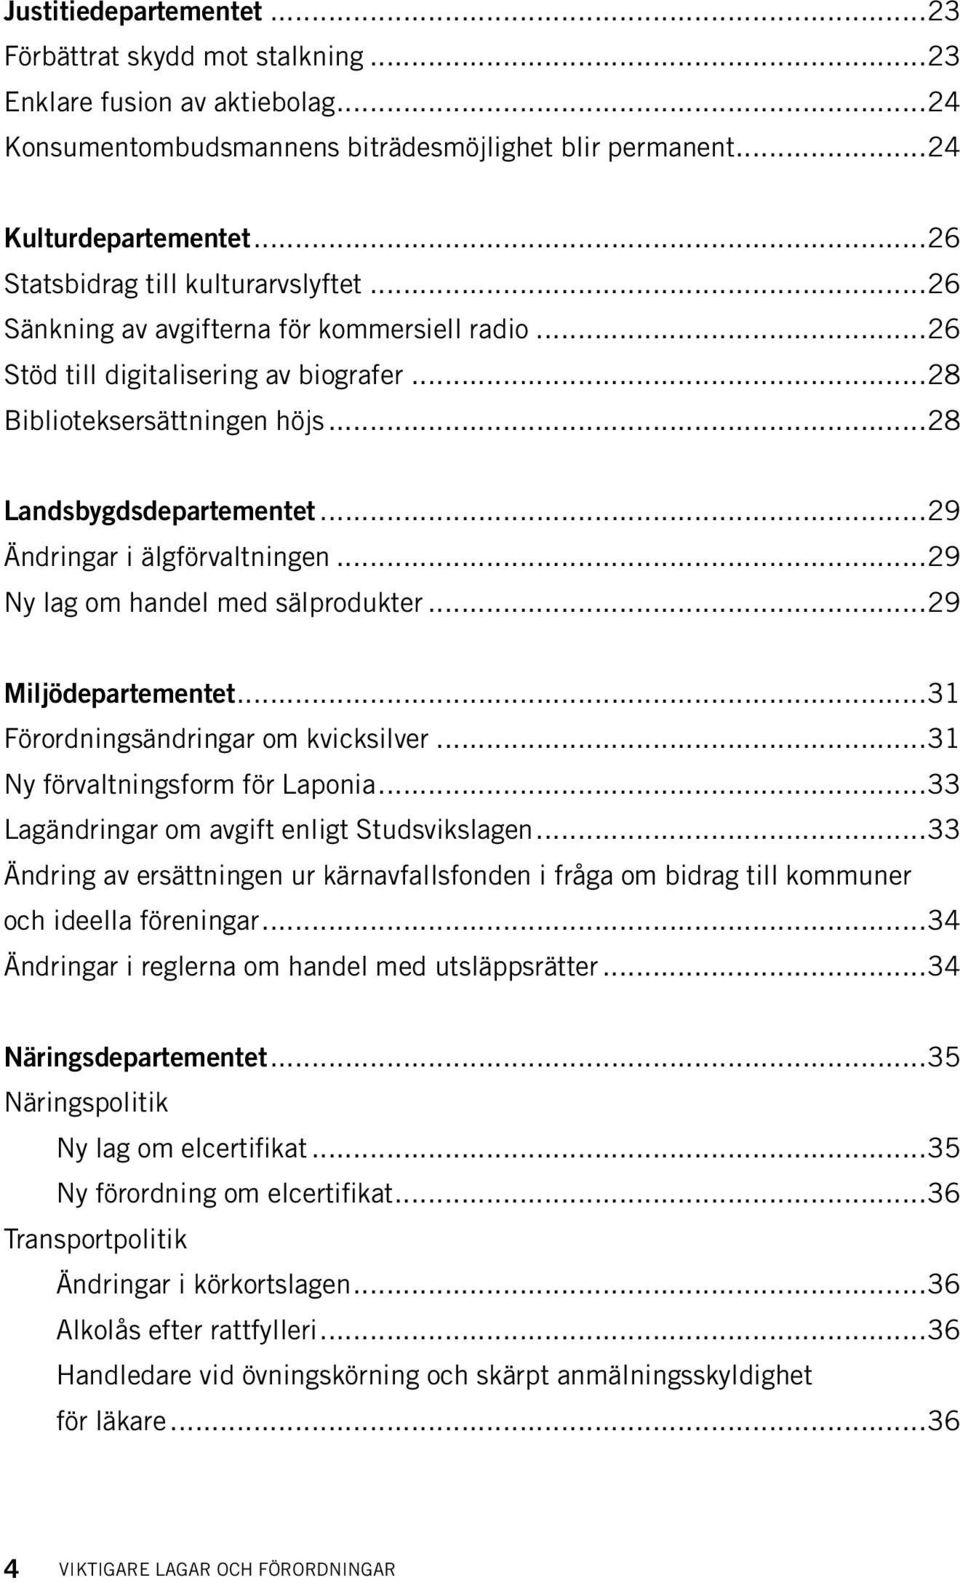 ..29 Ändringar i älgförvaltningen...29 Ny lag om handel med sälprodukter...29 Miljödepartementet...31 Förordningsändringar om kvicksilver...31 Ny förvaltningsform för Laponia.